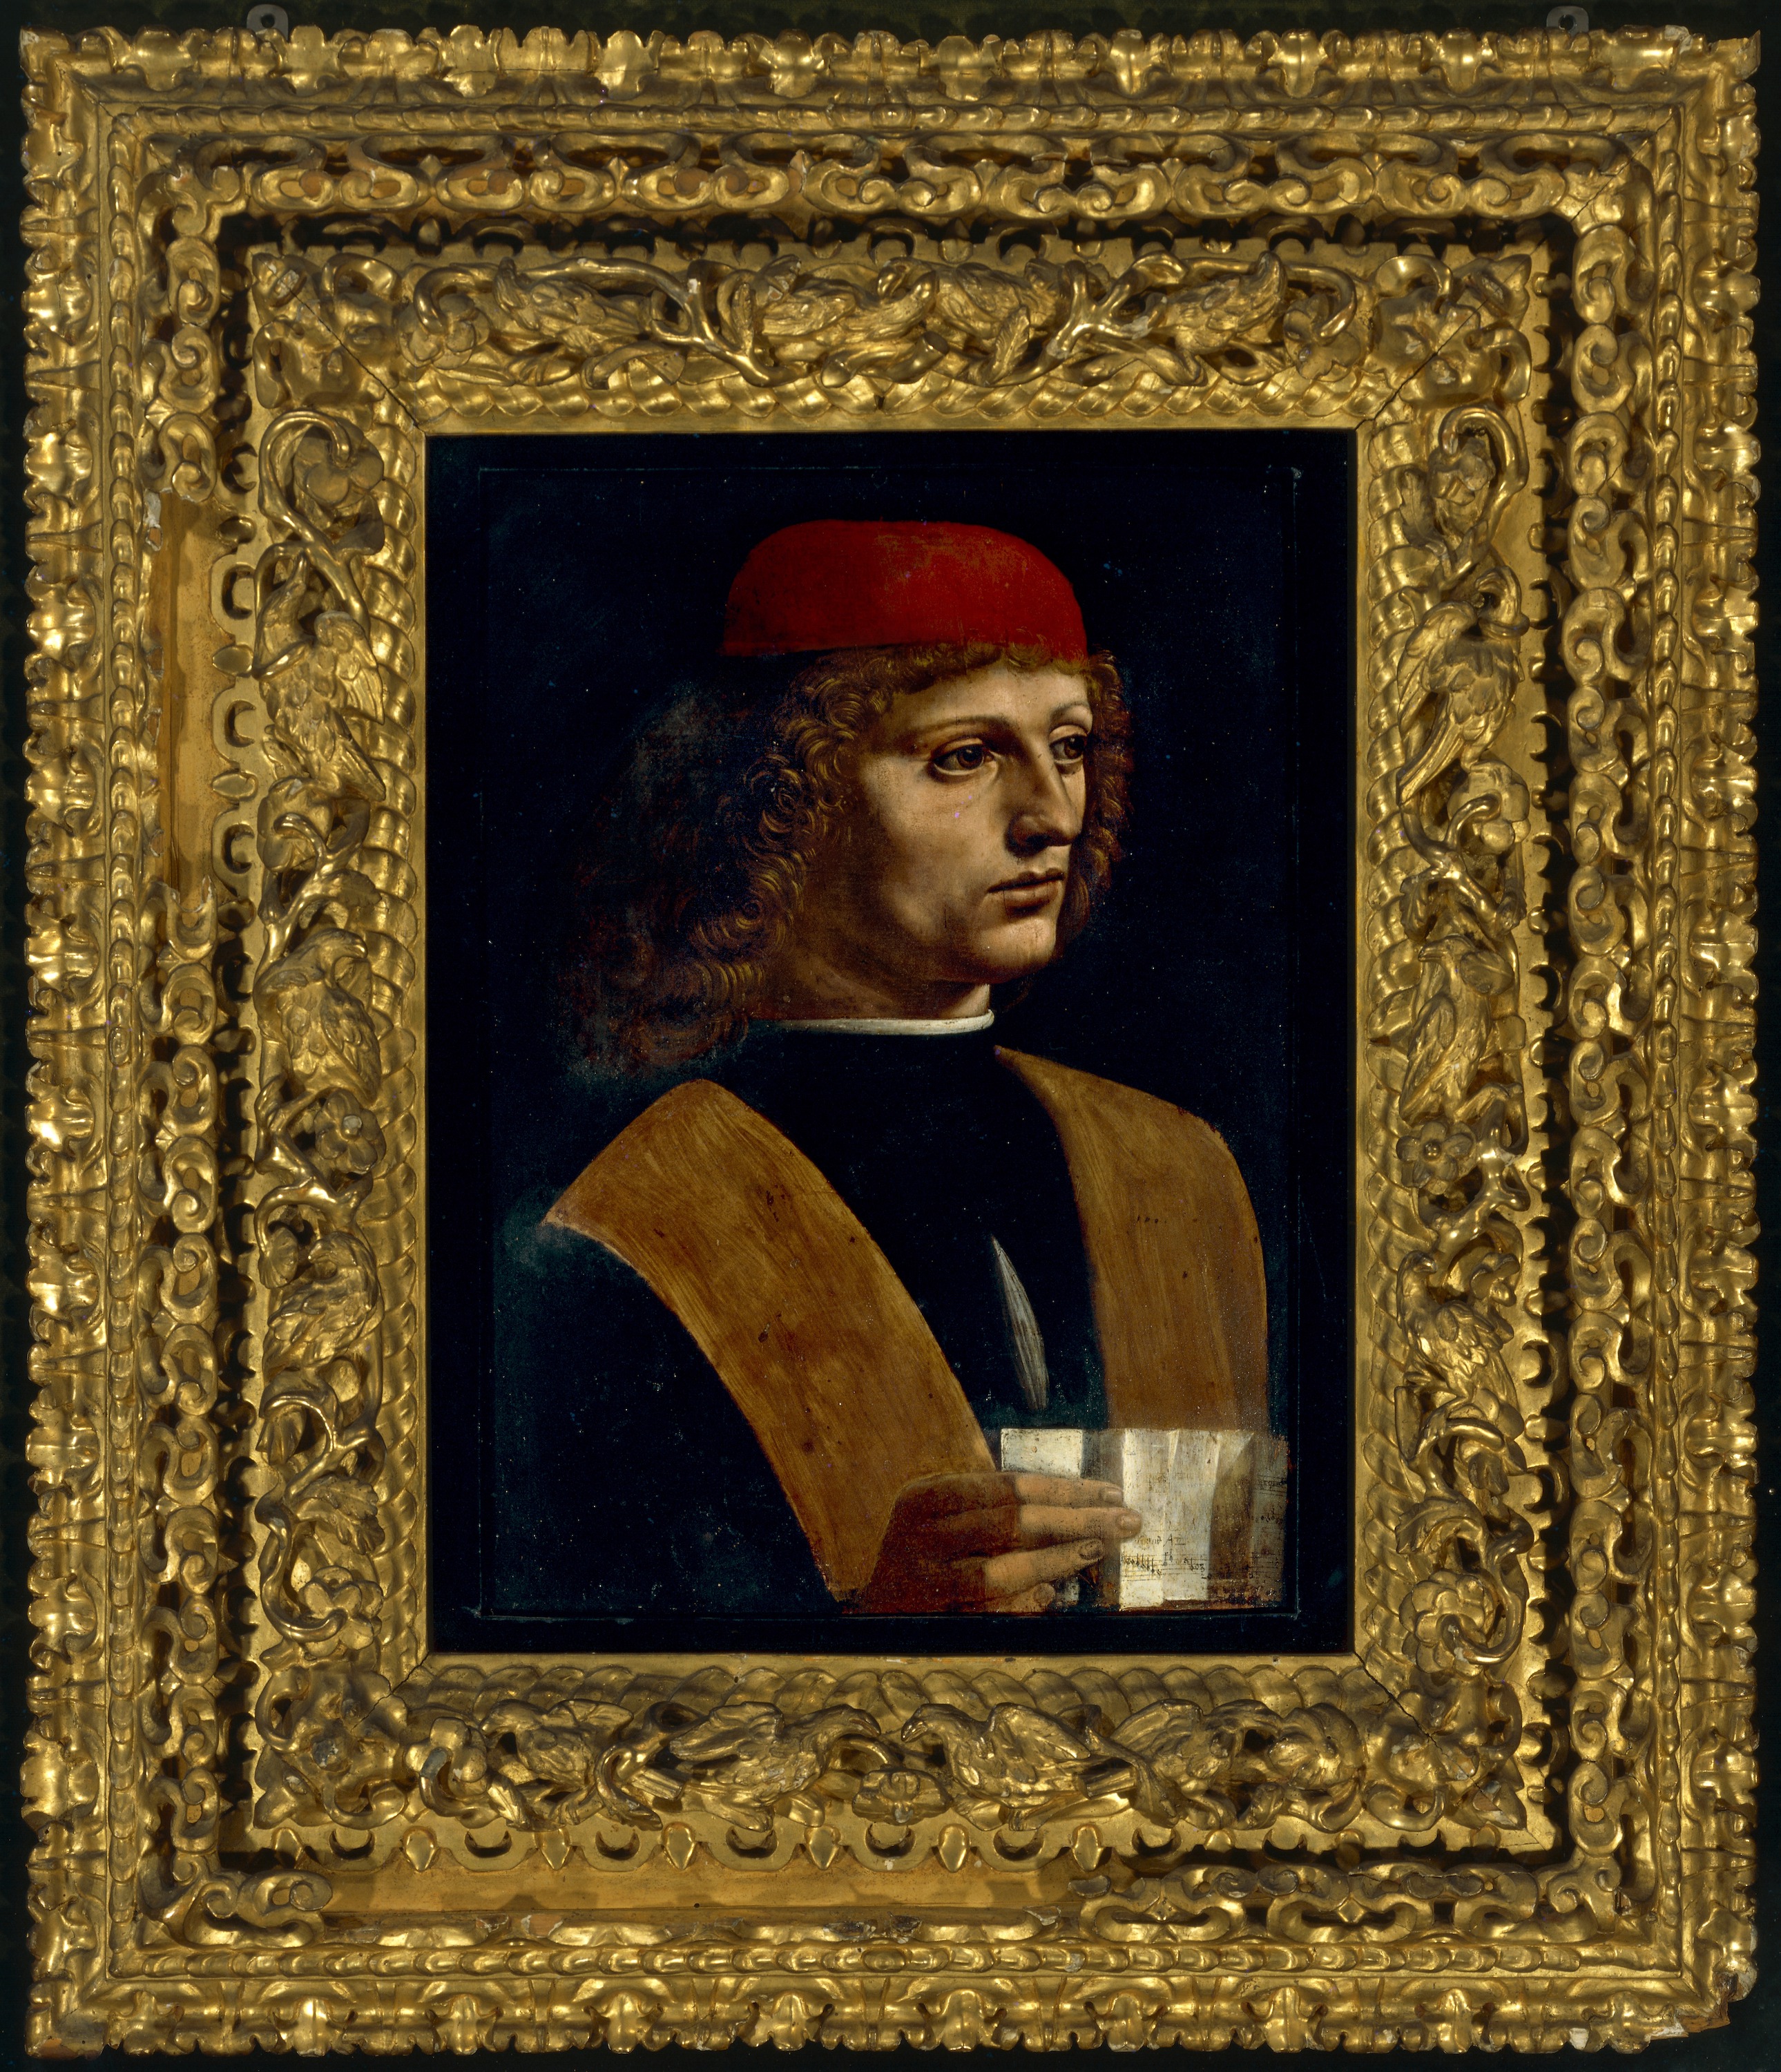 بورتريه عازف by Leonardo da Vinci - حوالي 1483-1487 م - 44.7 سم في 30 سم 